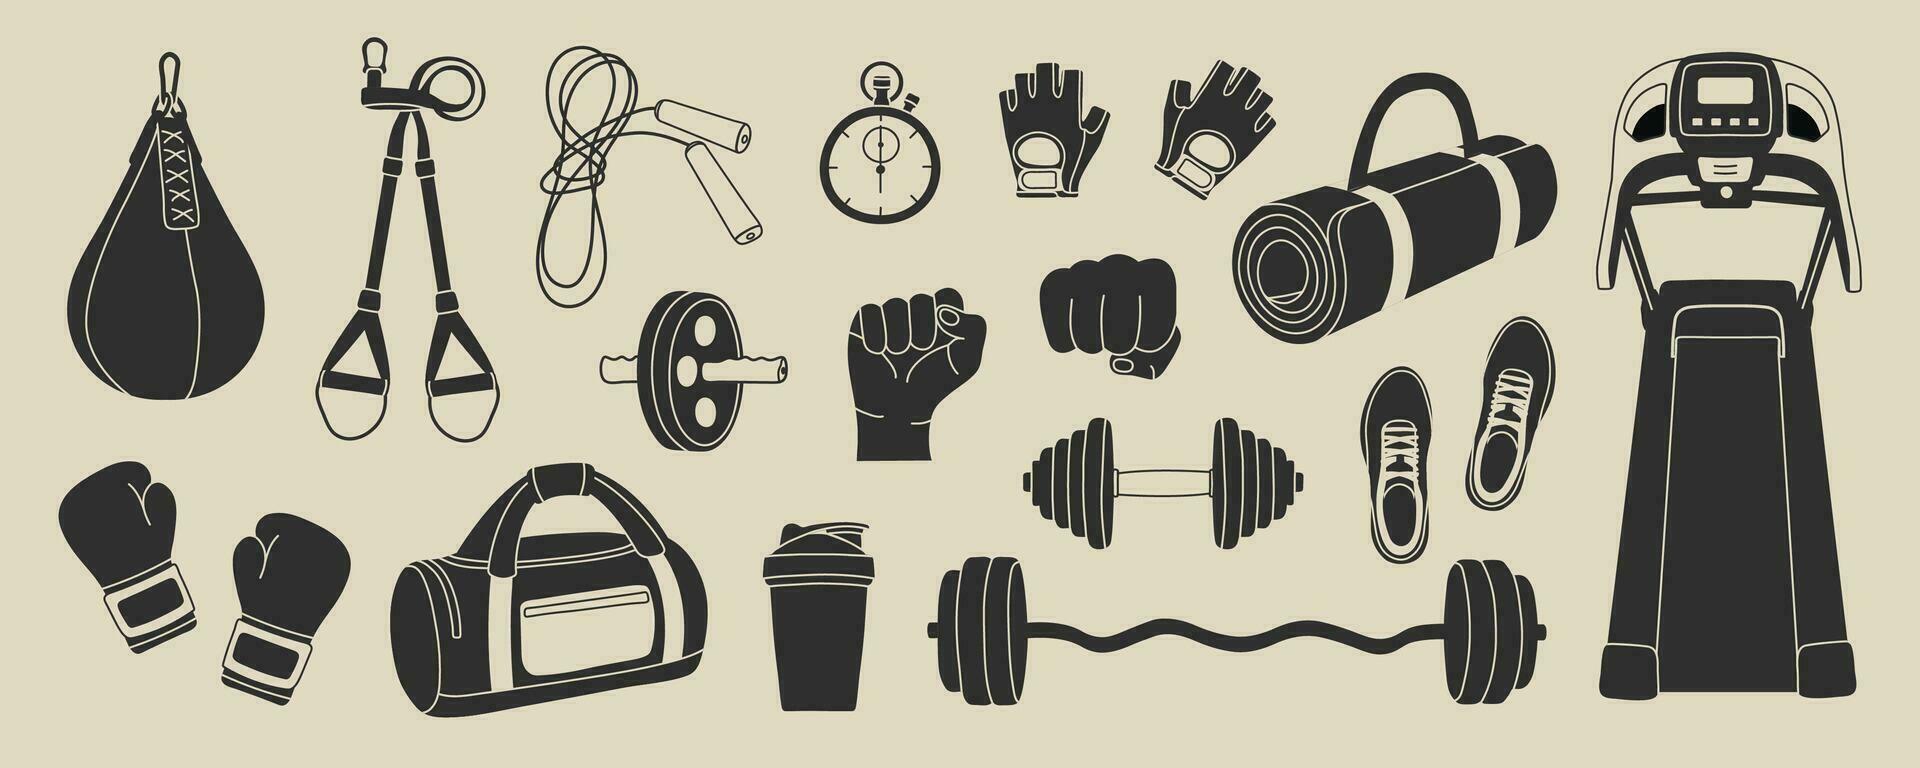 elementos de equipamiento deportivo en estilo moderno de línea plana. inventario de fitness dibujado a mano, ilustraciones de vectores de accesorios de gimnasio. estilo de vida saludable. dumbbell, bolsa deportiva, barbell, puño, zapatos, guantes de boxeo.